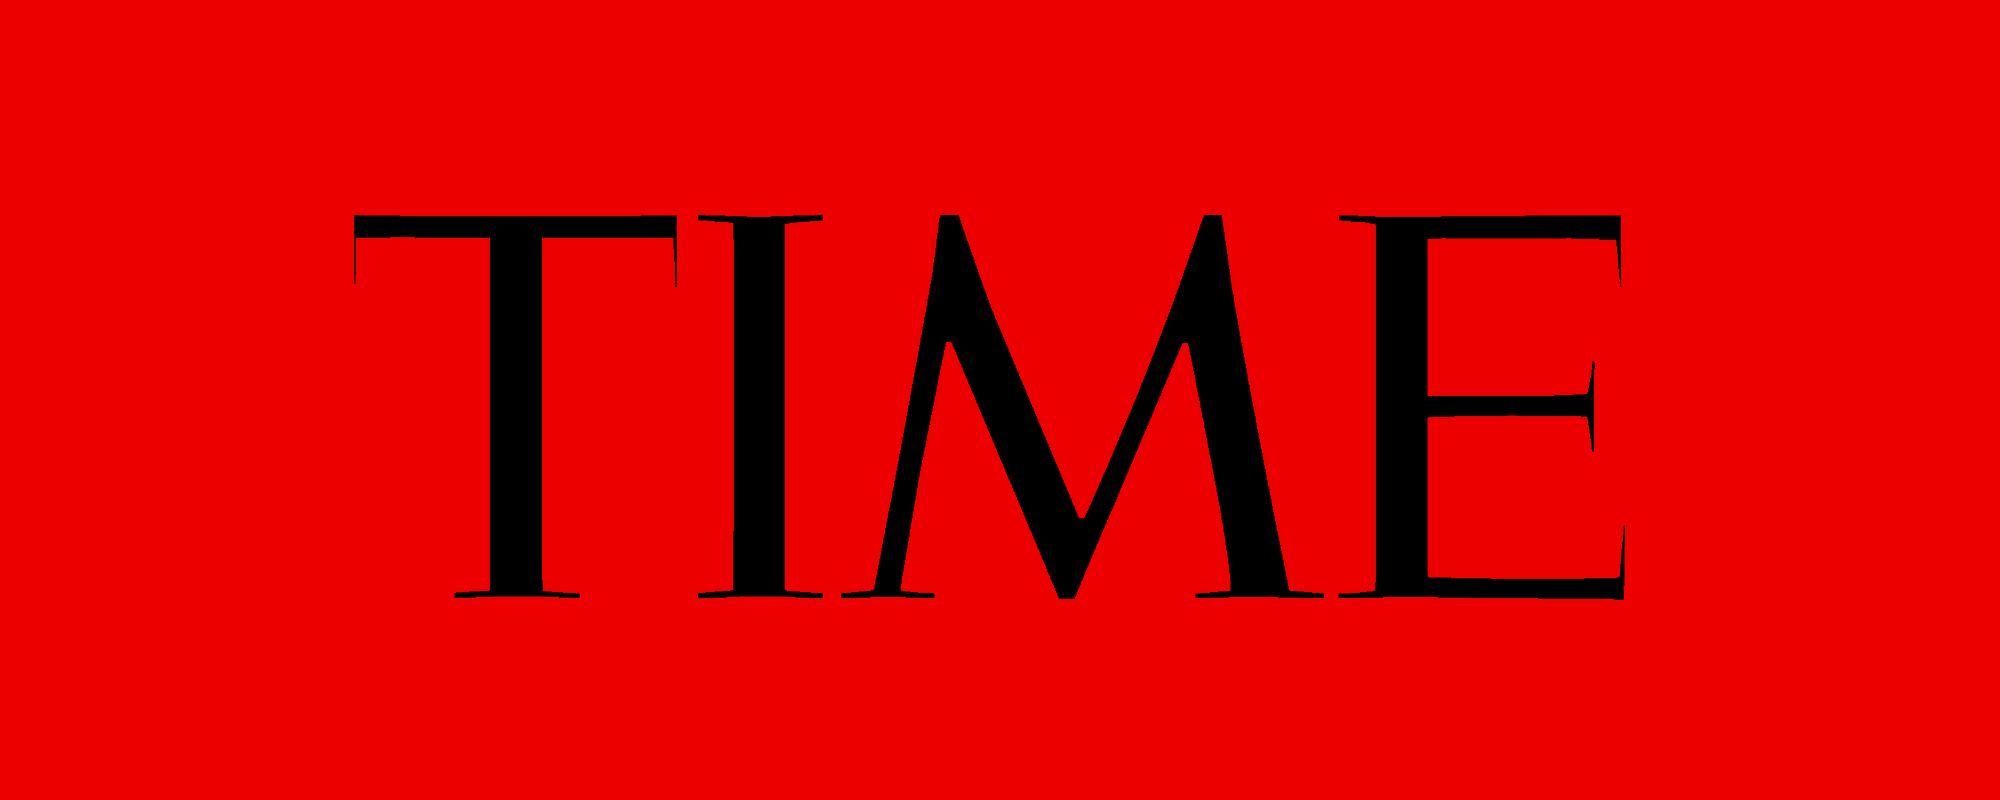 TIME Magazine ने जारी करी दुनिया के सबसे प्रभावशाली 100 लोगों की लिस्ट, जानिए किन-किन का नाम है शामिल